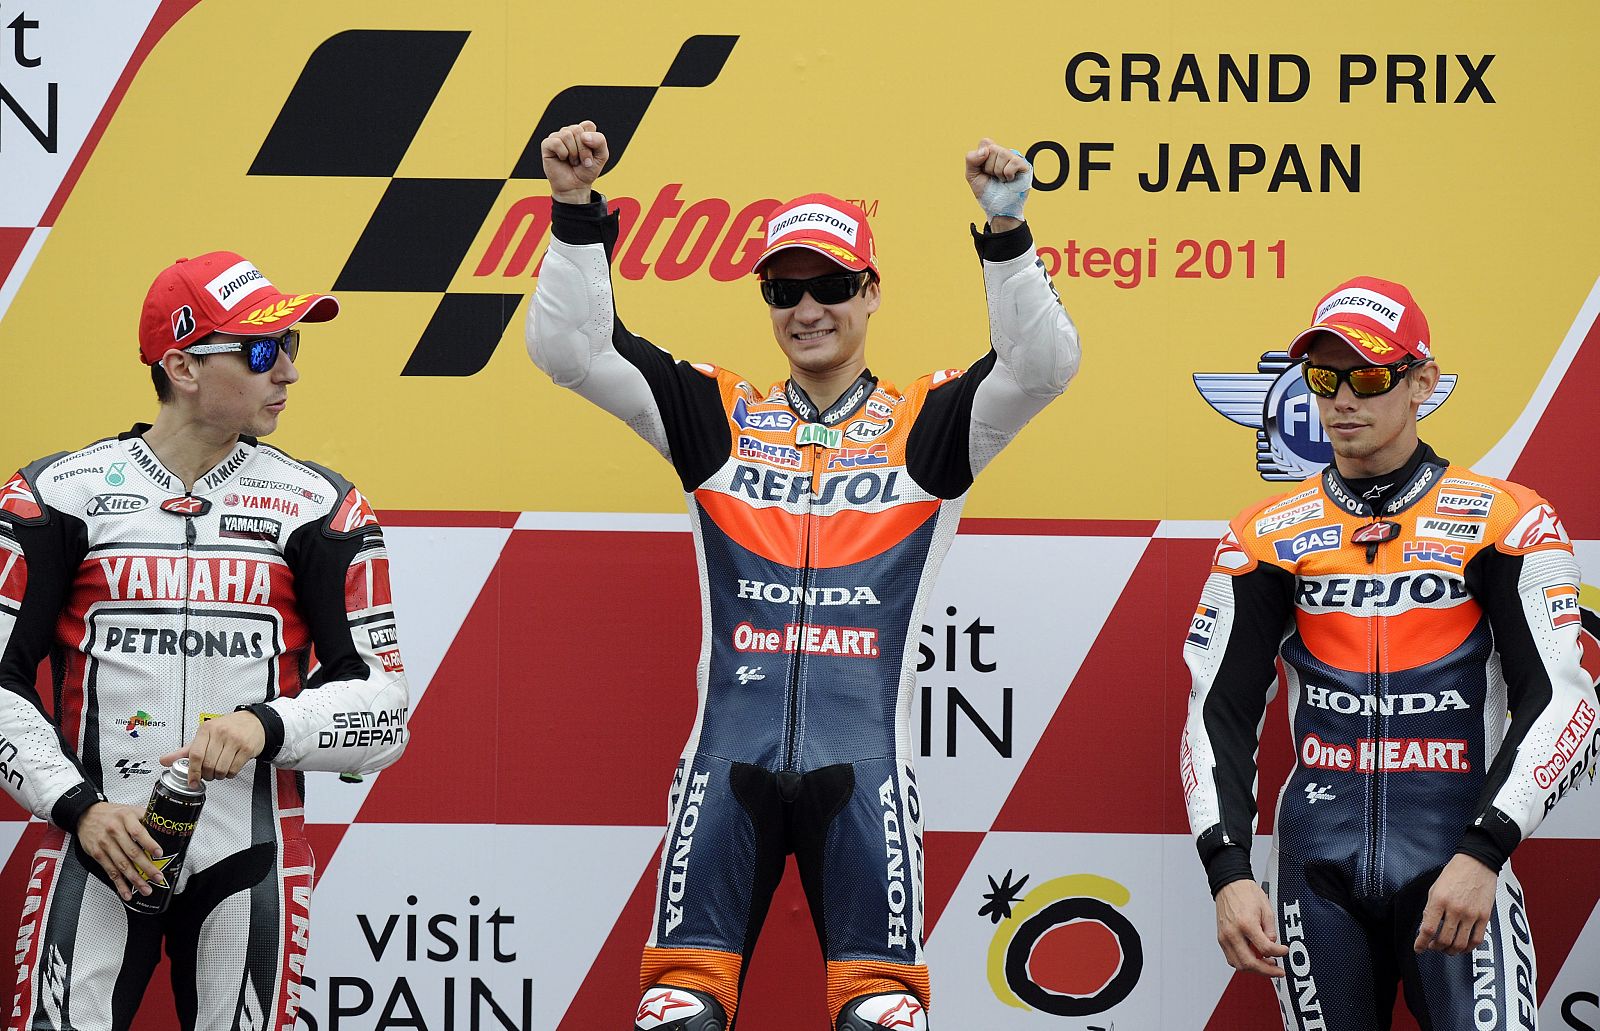 Los pilotos españoles Jorge Lorenzo de Yamaha, Dani Pedrosa de Honda y el australiano Casey Stoner, podio en el Gran Premio de Japón.